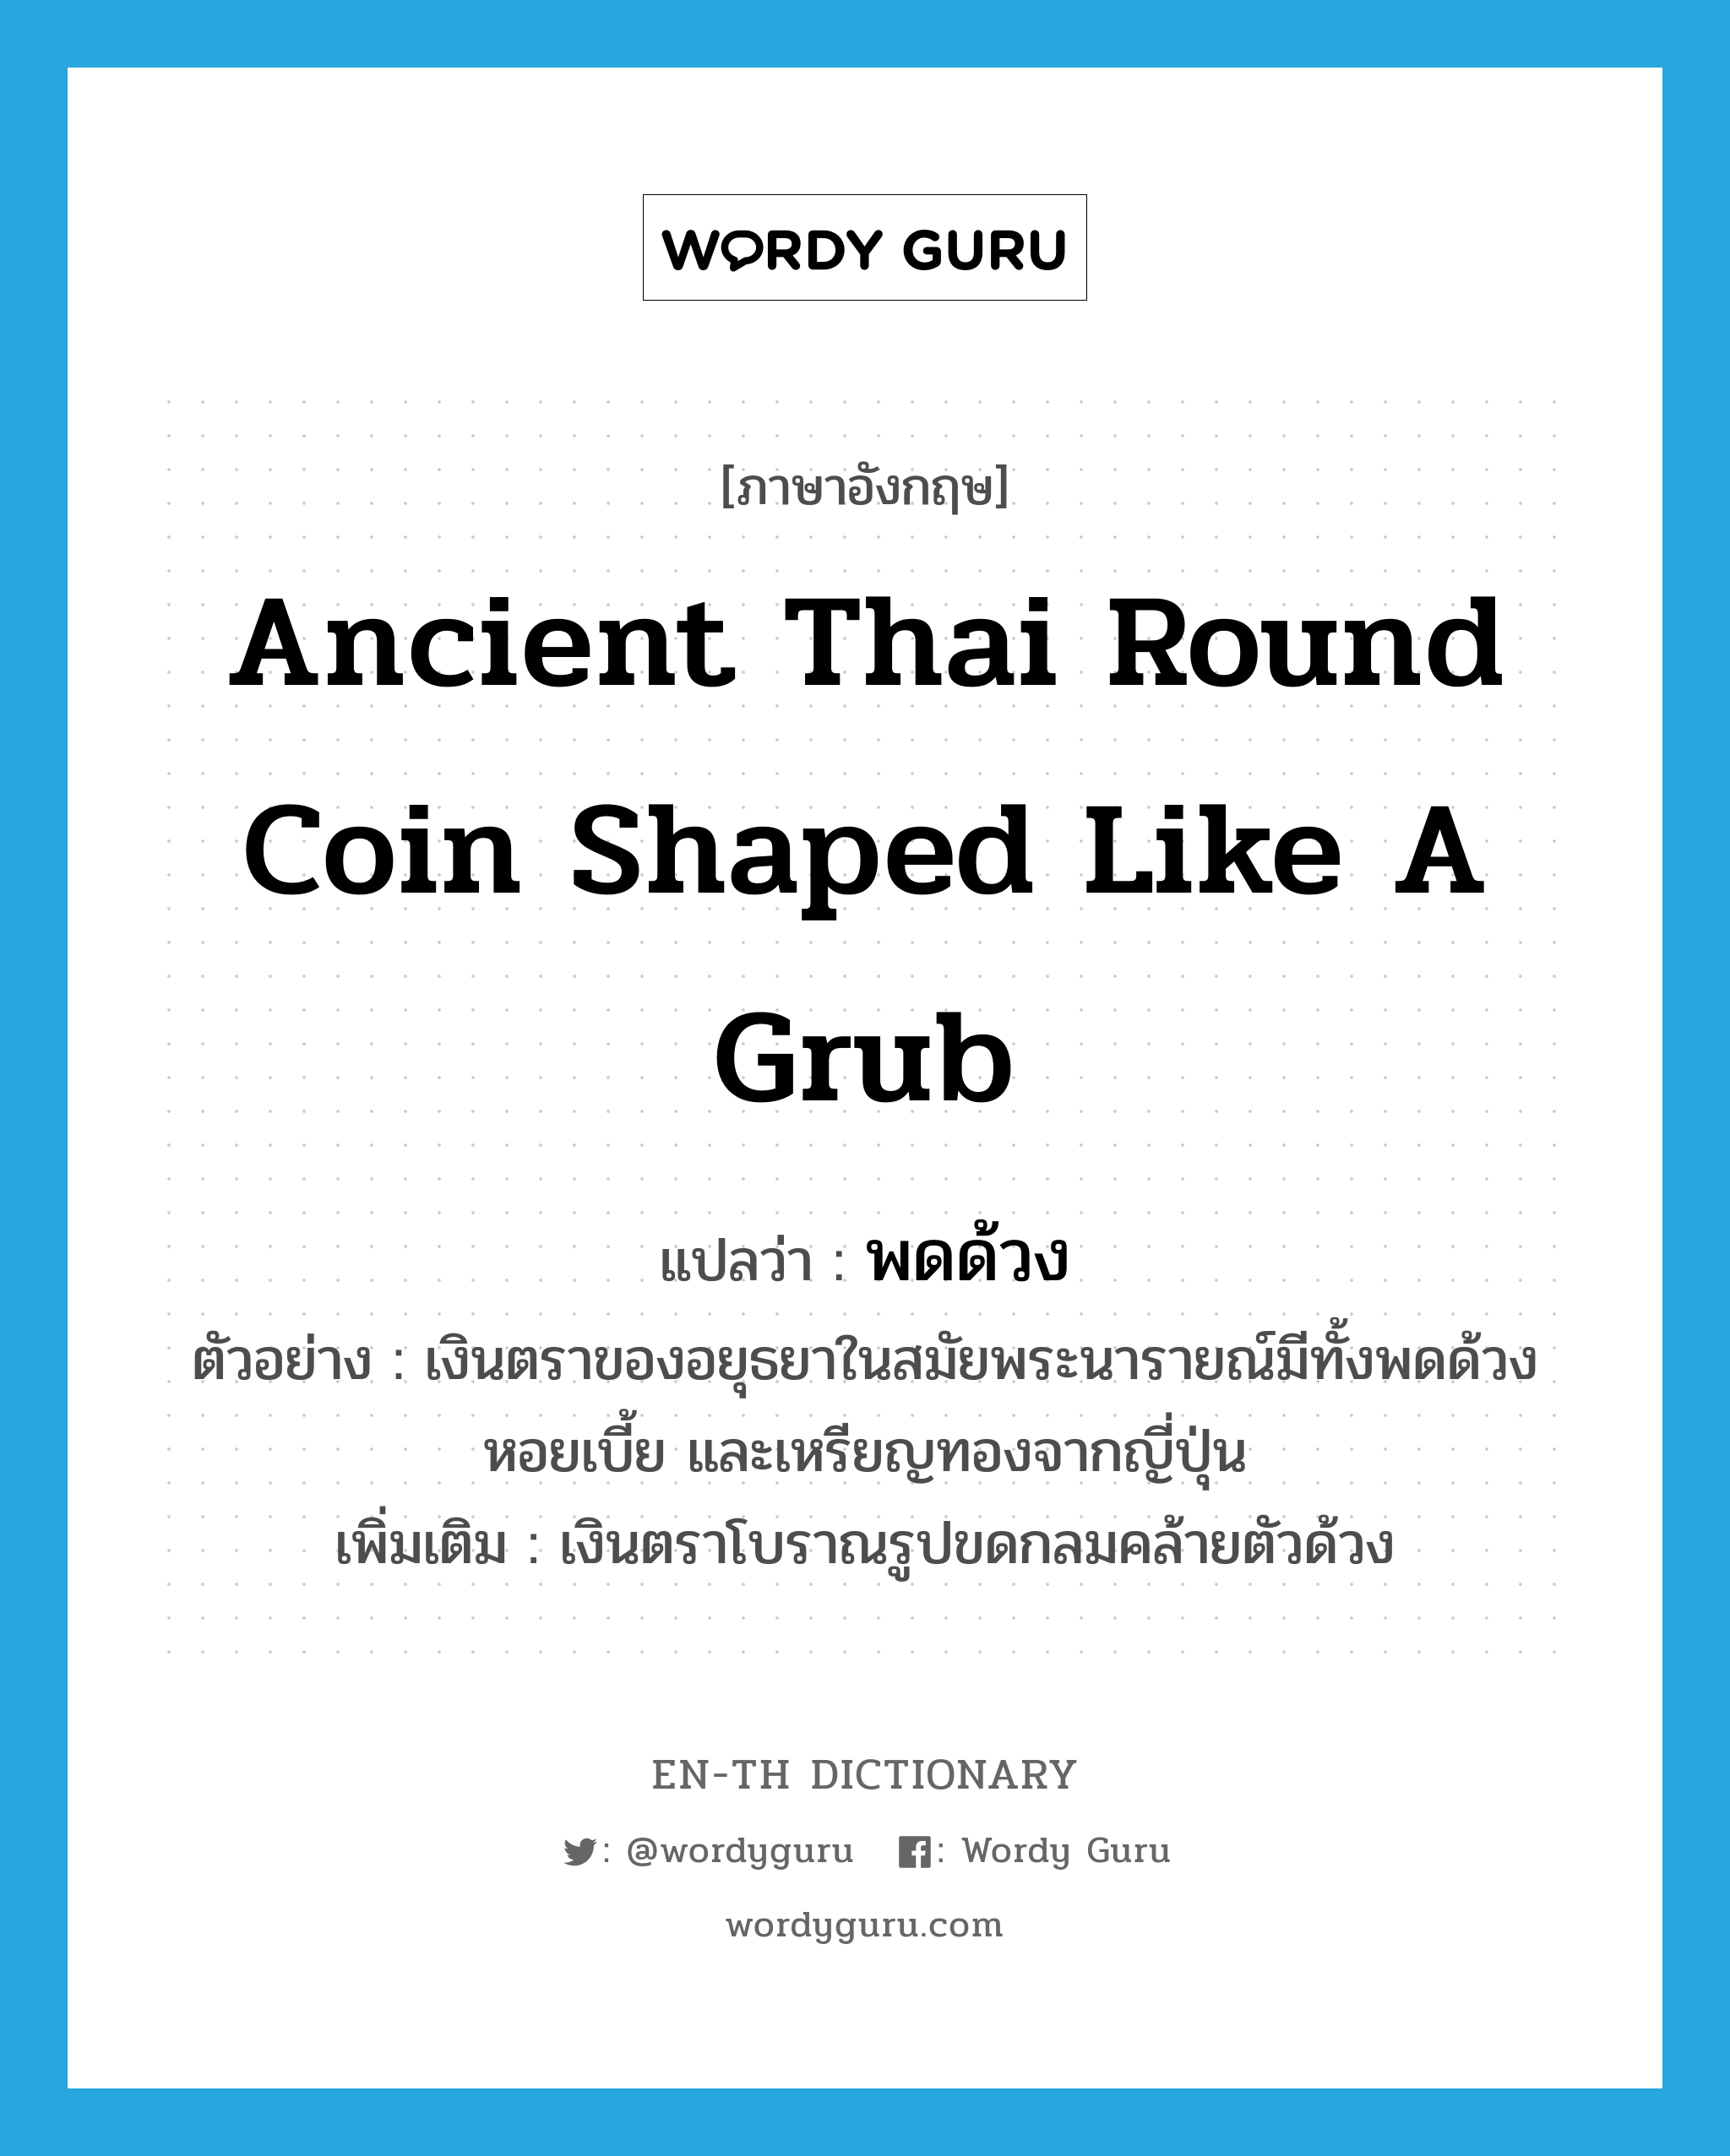 พดด้วง ภาษาอังกฤษ?, คำศัพท์ภาษาอังกฤษ พดด้วง แปลว่า ancient Thai round coin shaped like a grub ประเภท N ตัวอย่าง เงินตราของอยุธยาในสมัยพระนารายณ์มีทั้งพดด้วง หอยเบี้ย และเหรียญทองจากญี่ปุ่น เพิ่มเติม เงินตราโบราณรูปขดกลมคล้ายตัวด้วง หมวด N